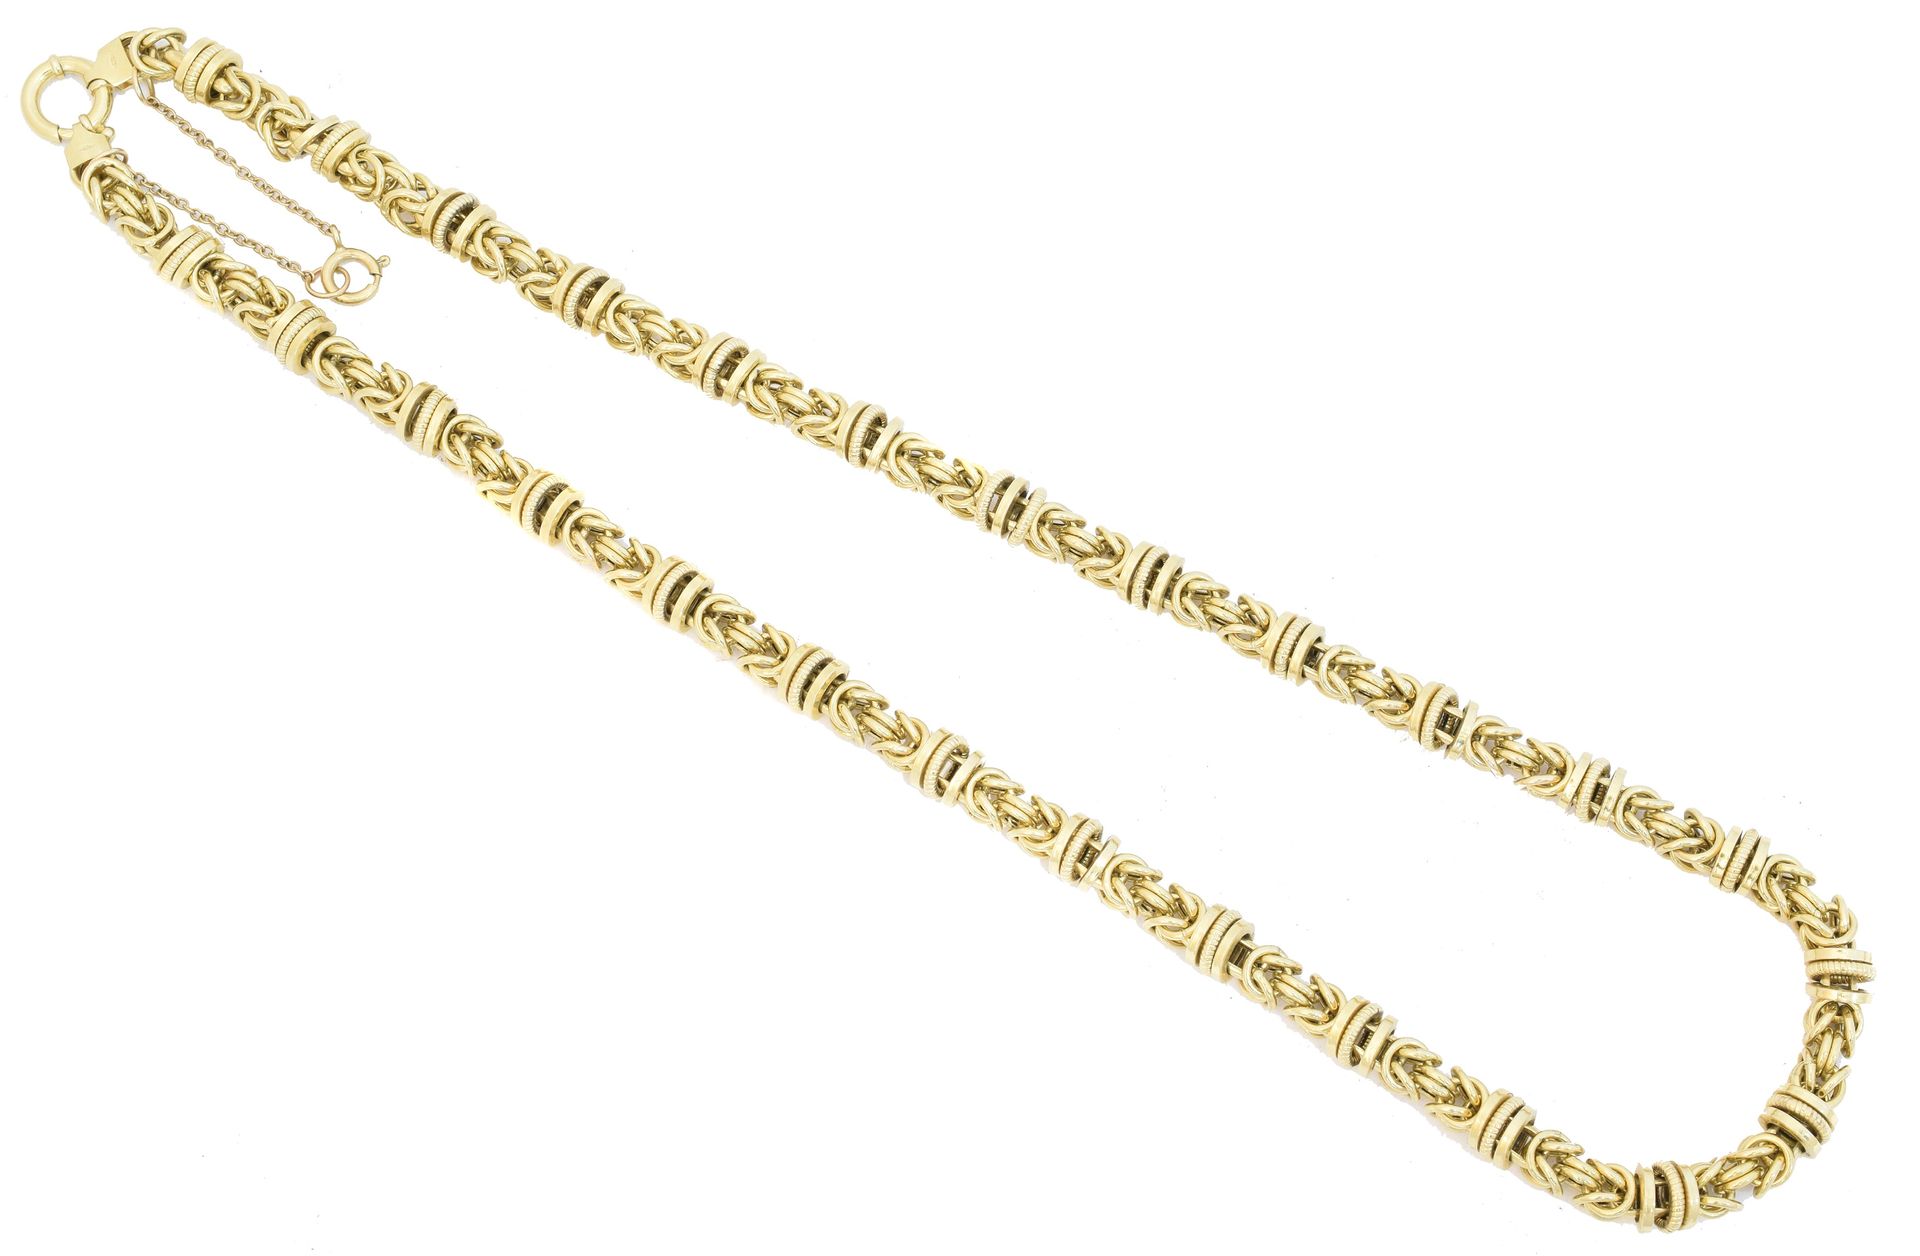 A 9ct gold chain necklace, 
Una collana a catena in oro 9ct, la catena a maglie &hellip;